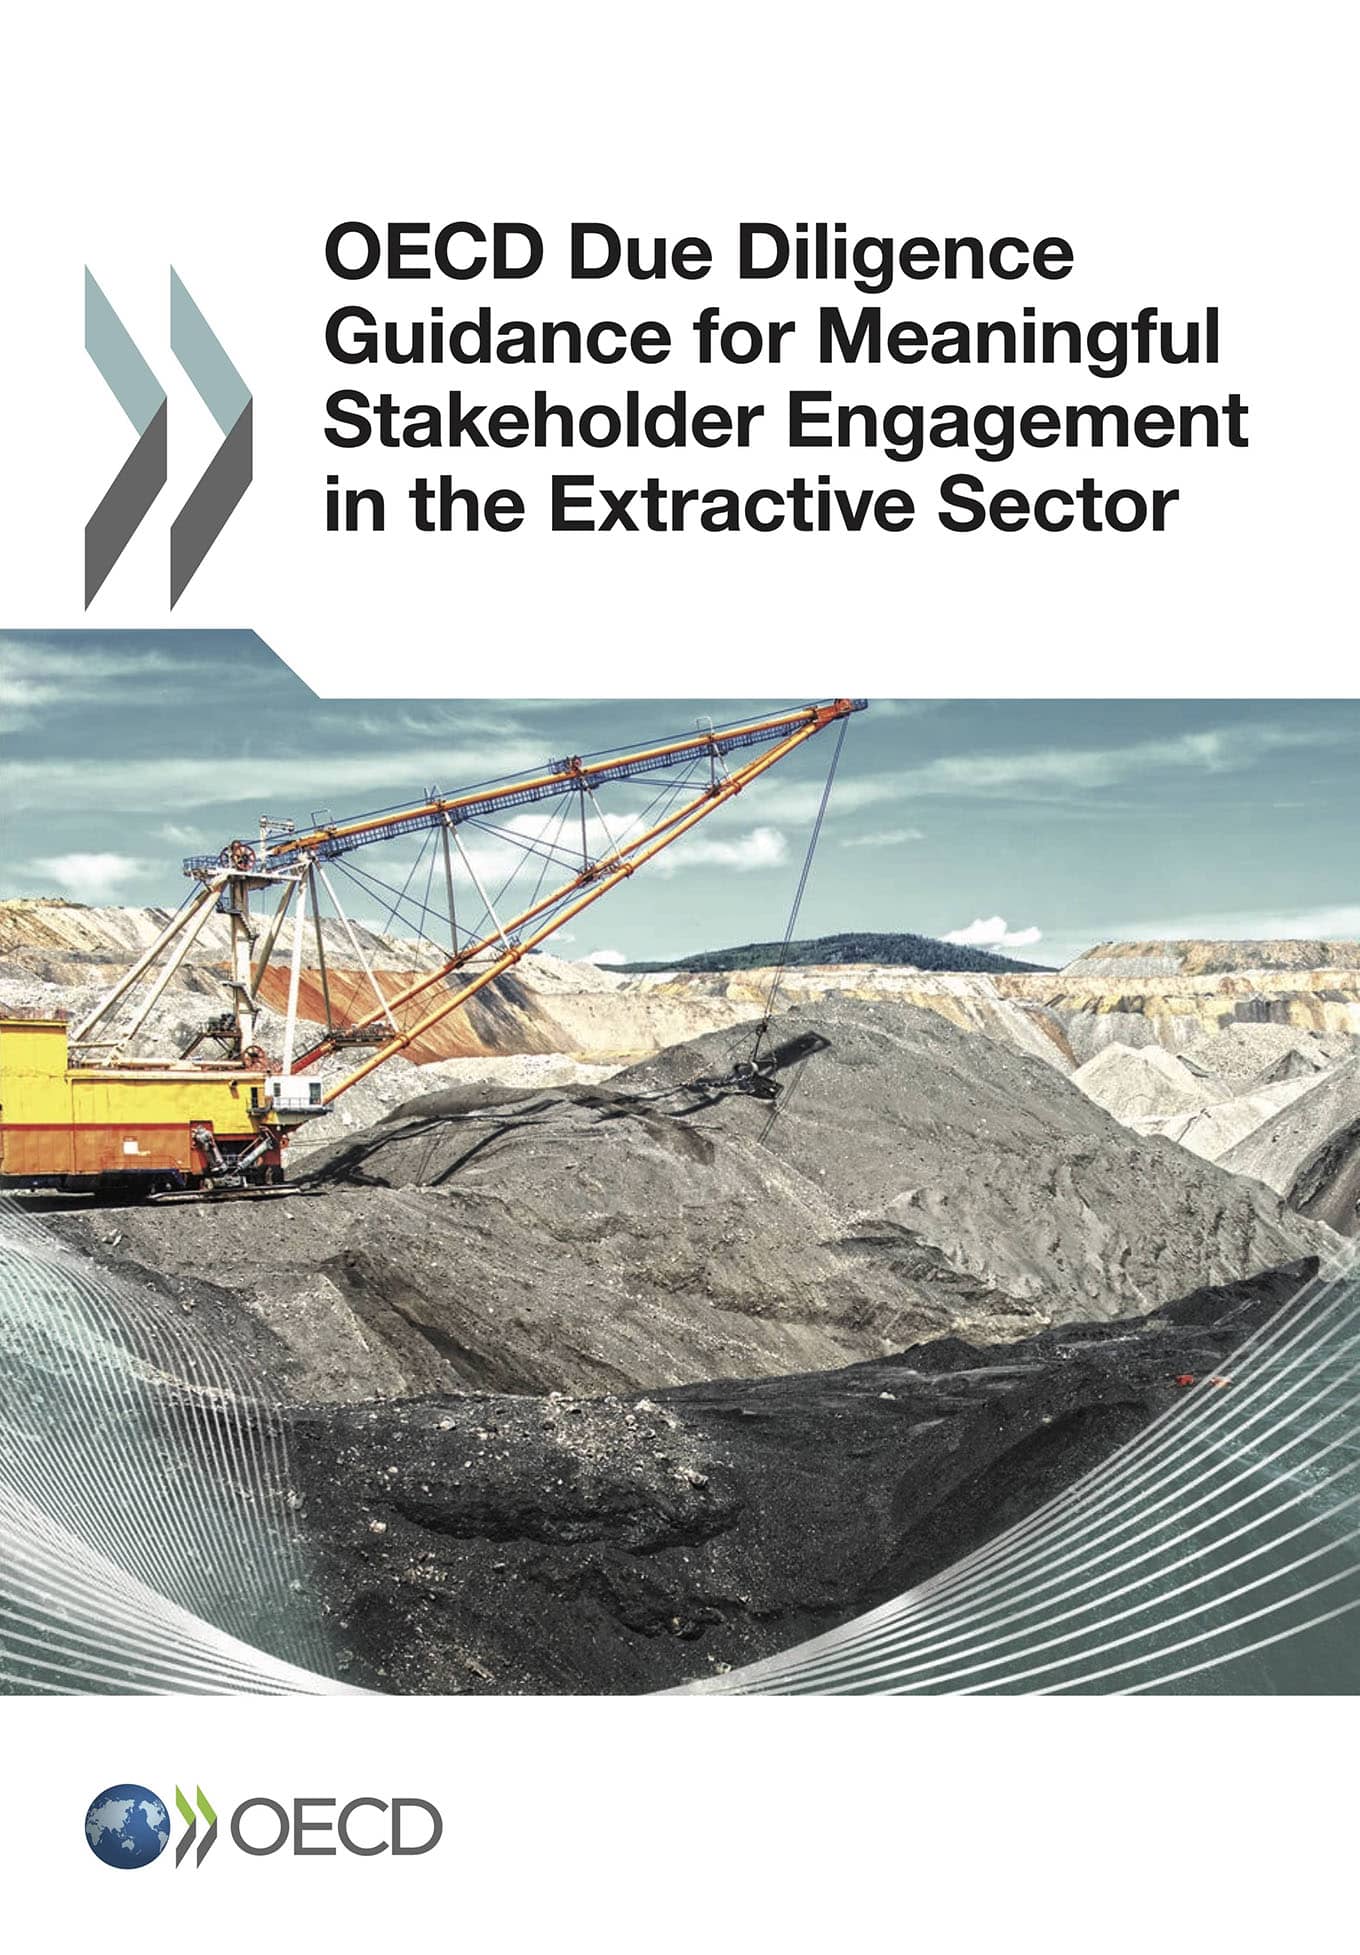 Guide de l’OCDE sur le devoir de diligence pour un engagement constructif des parties prenantes dans le secteur extractif (OCDE, 2017)